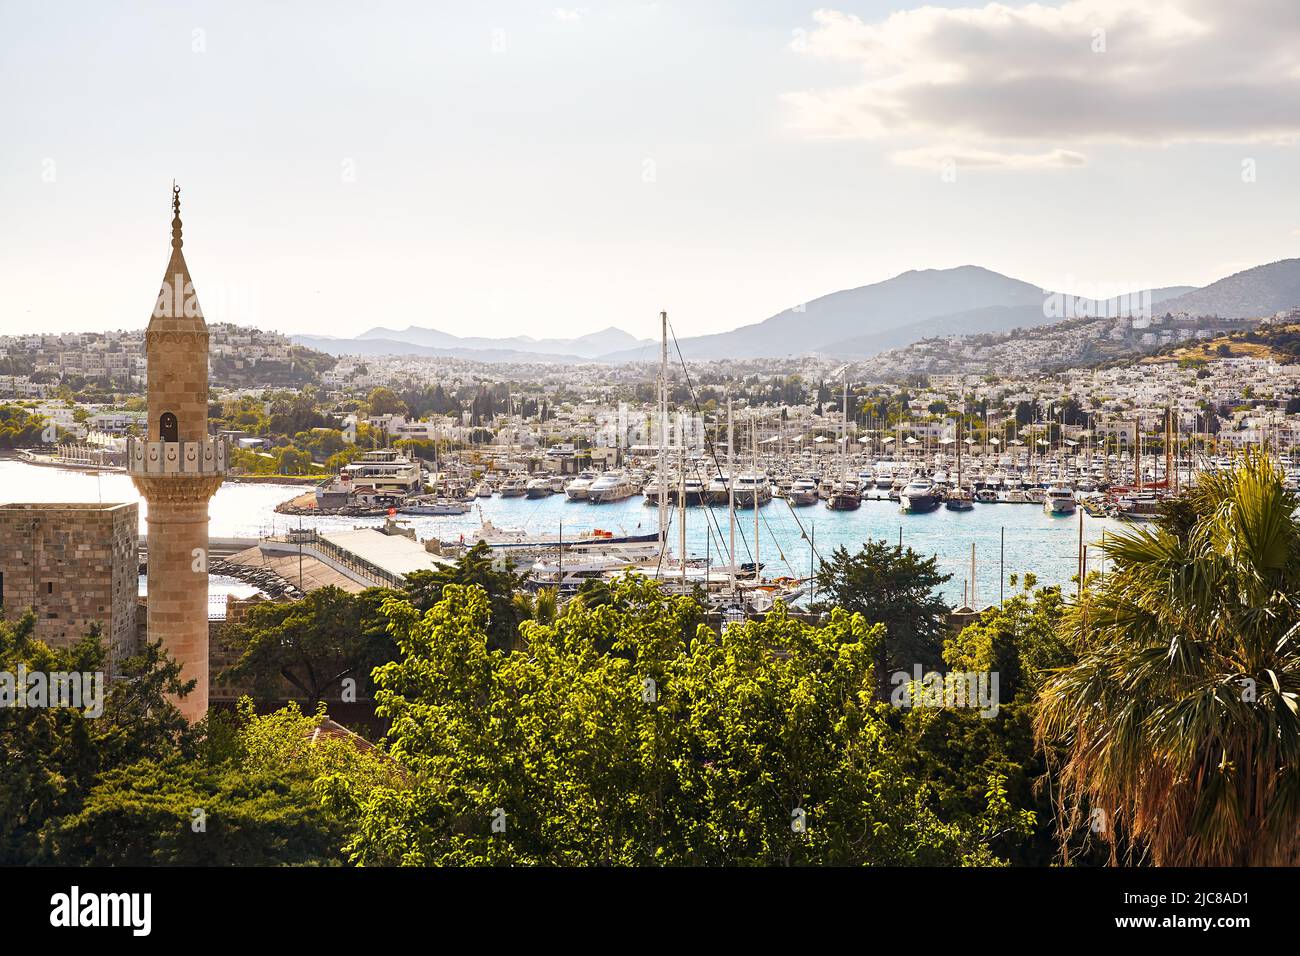 Vista de la playa Bodrum desde el castillo y la torre de la mezquita. Barcos de vela, yates en el mar Egeo con casas blancas tradicionales en las colinas de Bodrum ciudad de Turquía Foto de stock